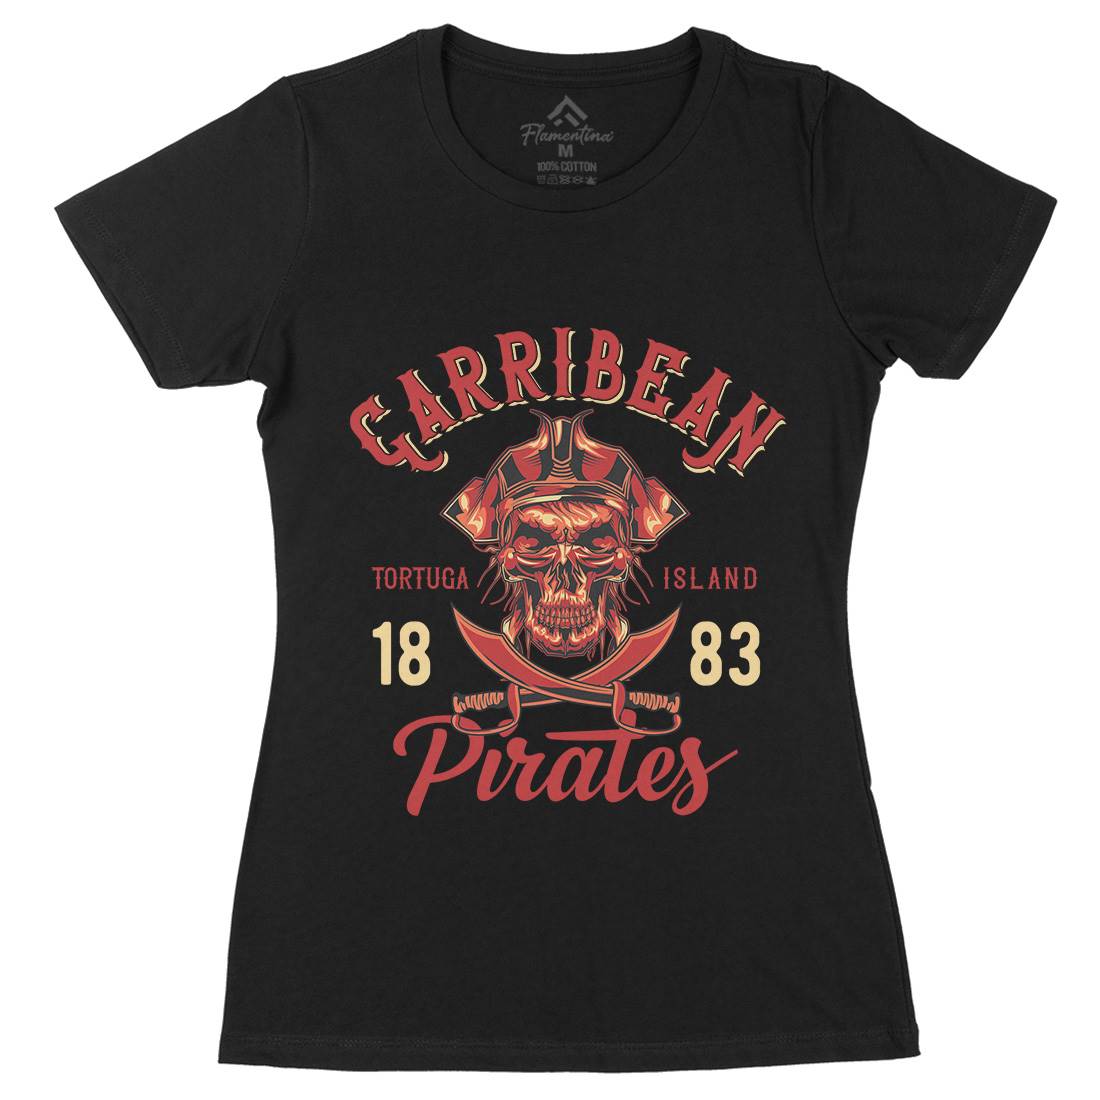 Pirate Womens Organic Crew Neck T-Shirt Navy B160